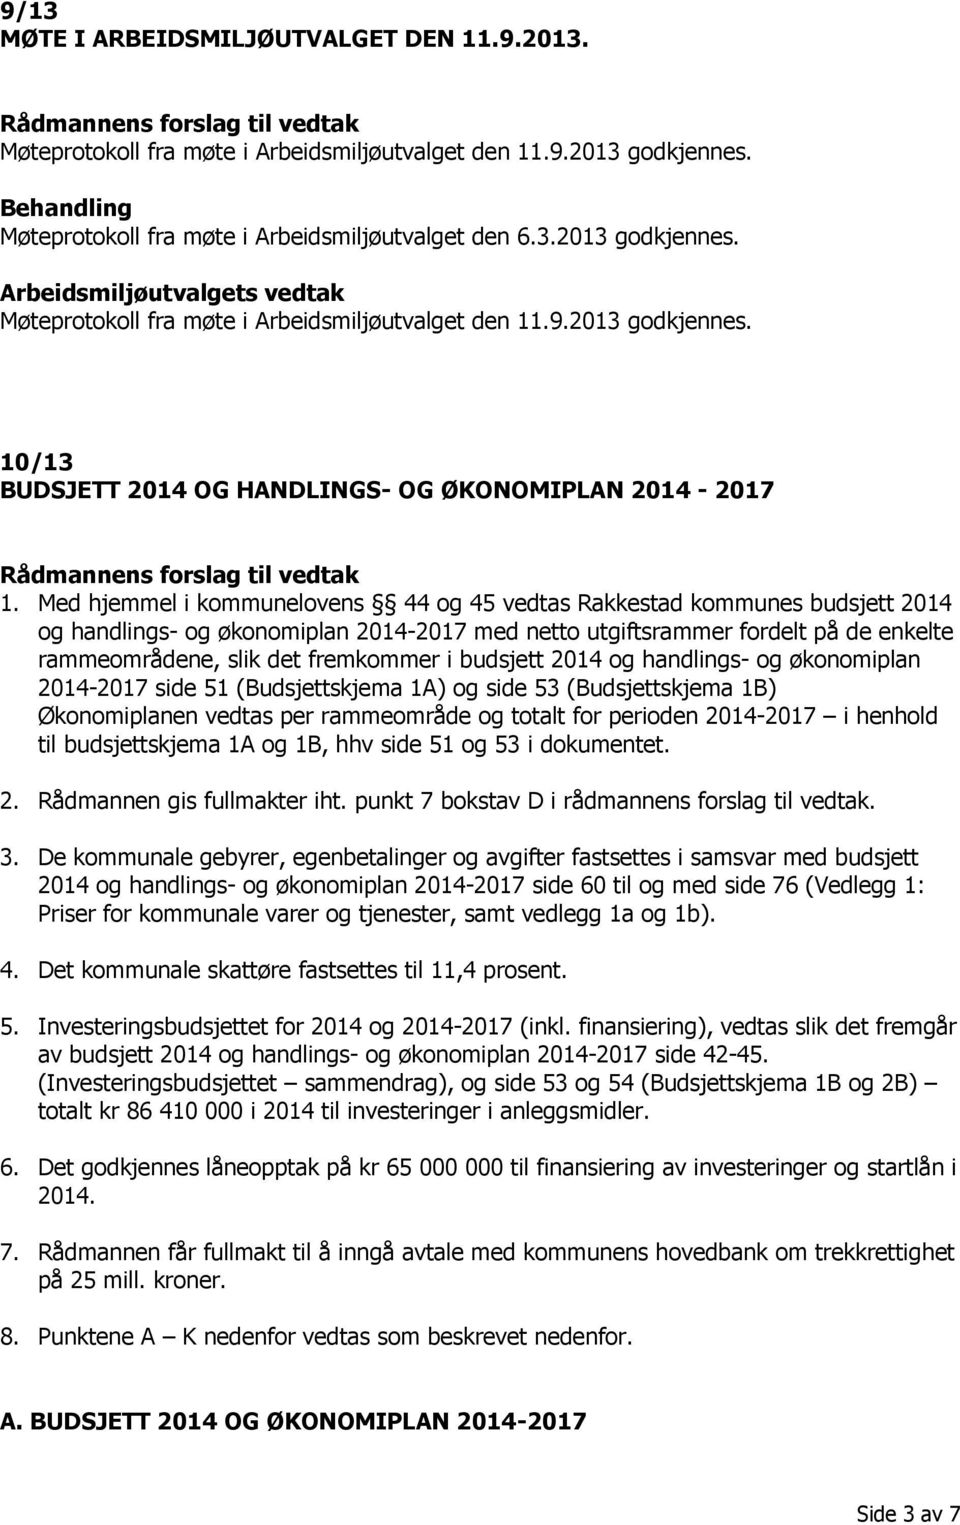 Med hjemmel i kommunelovens 44 og 45 vedtas Rakkestad kommunes budsjett 2014 og handlings- og økonomiplan 2014-2017 med netto utgiftsrammer fordelt på de enkelte rammeområdene, slik det fremkommer i